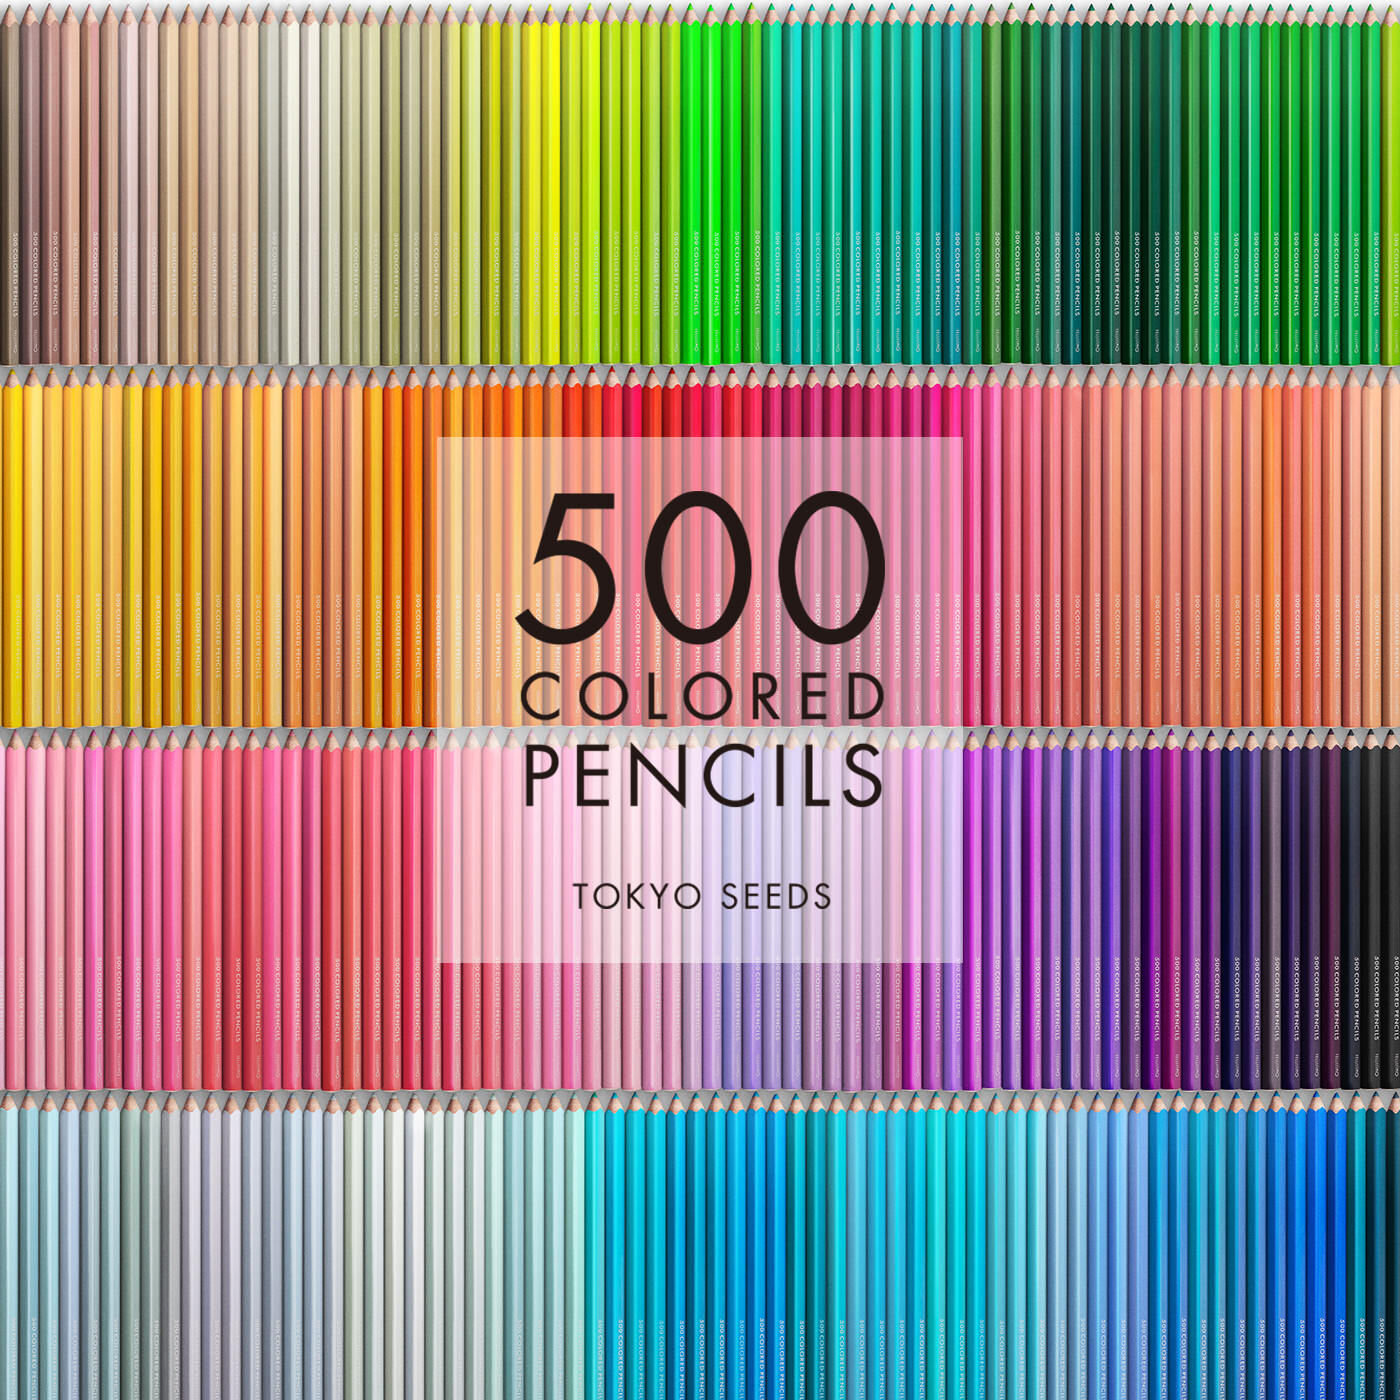 Real Stock|【33/500 BALEARIC BATHING】500色の色えんぴつ TOKYO SEEDS|1992年、世界初の「500色」という膨大な色数の色えんぴつが誕生して以来、その販売数は発売当初から合わせると、世界55ヵ国10万セット以上。今回、メイド・イン・ジャパンにこだわり、すべてが新しく生まれ変わって登場しました。